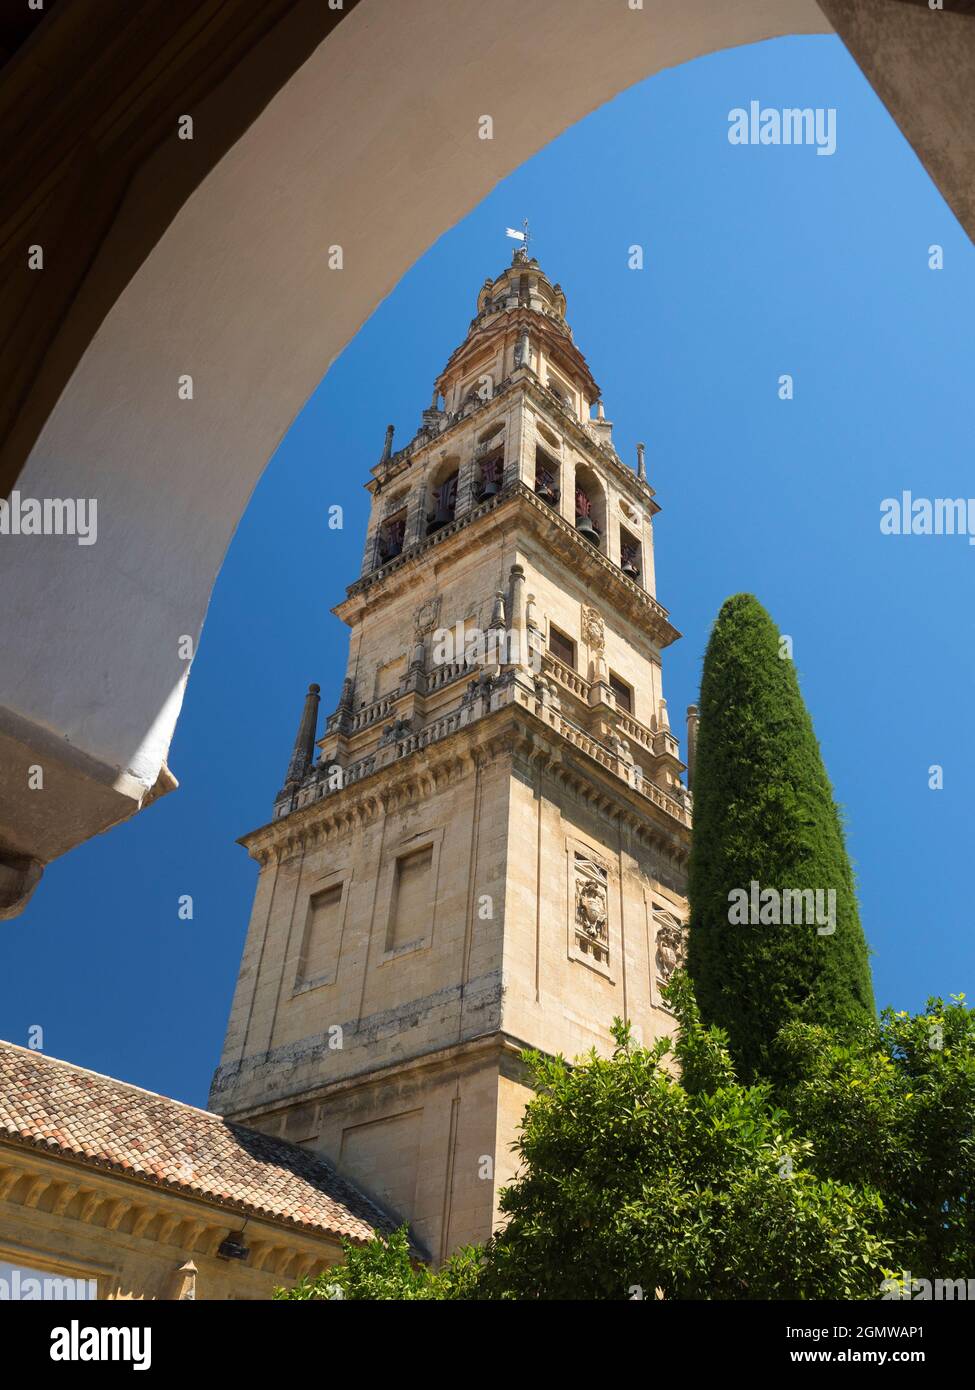 Cordoba, Spagna - 16 maggio 2015; nessuna gente in vista. La moschea-cattedrale di Mezquita a Cordoba, in Spagna, è un edificio davvero affascinante con un evento Foto Stock